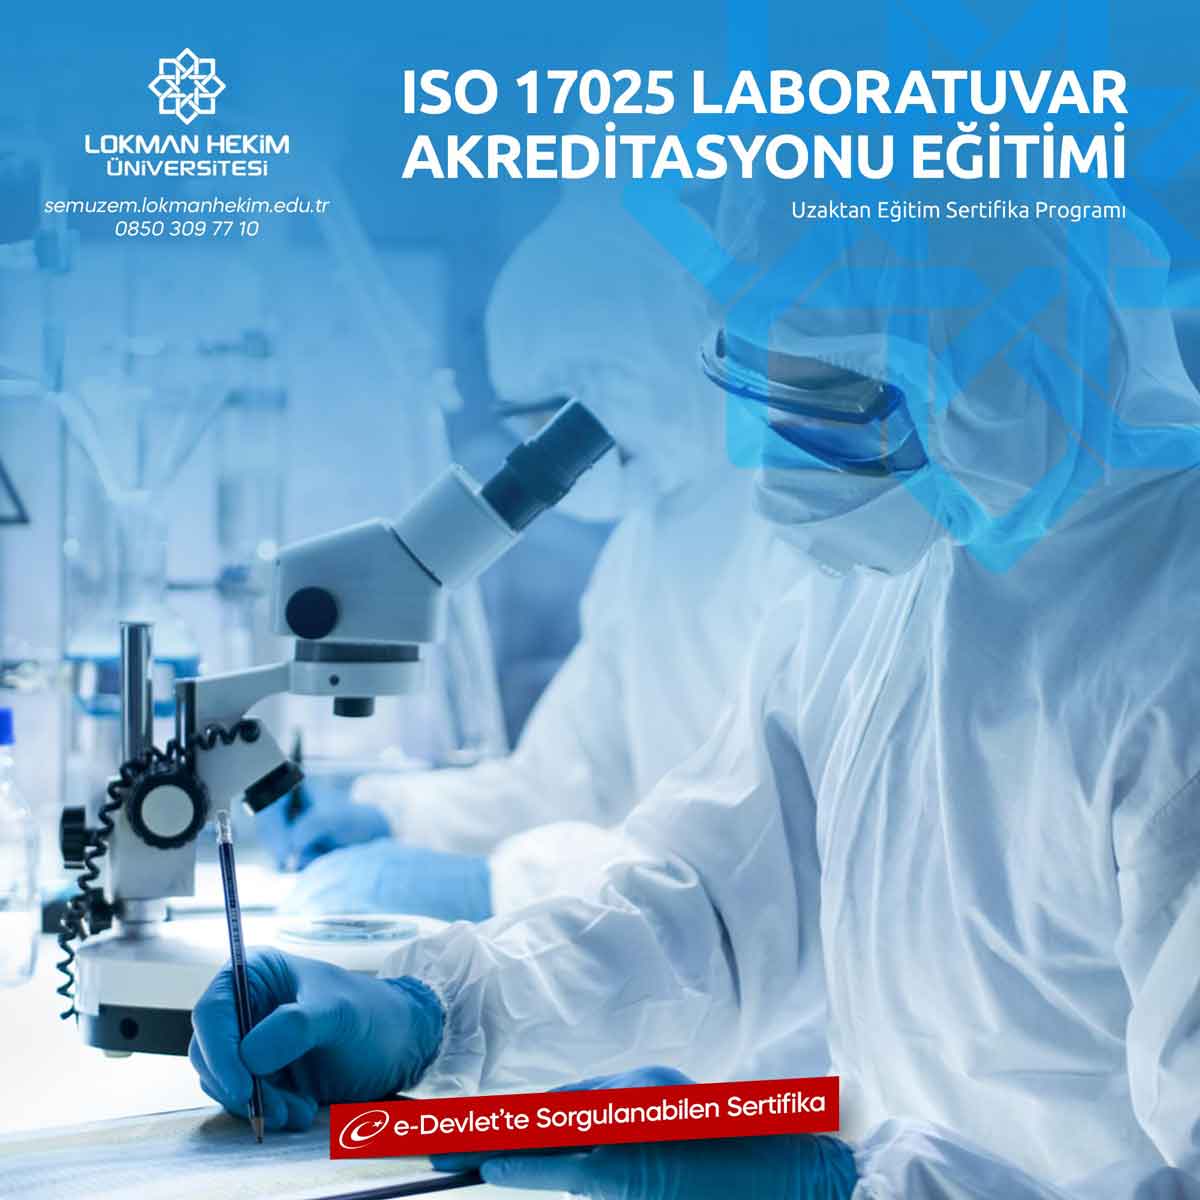 ISO 17025 Laboratuvar Akreditasyonu Eğitimi Nedir